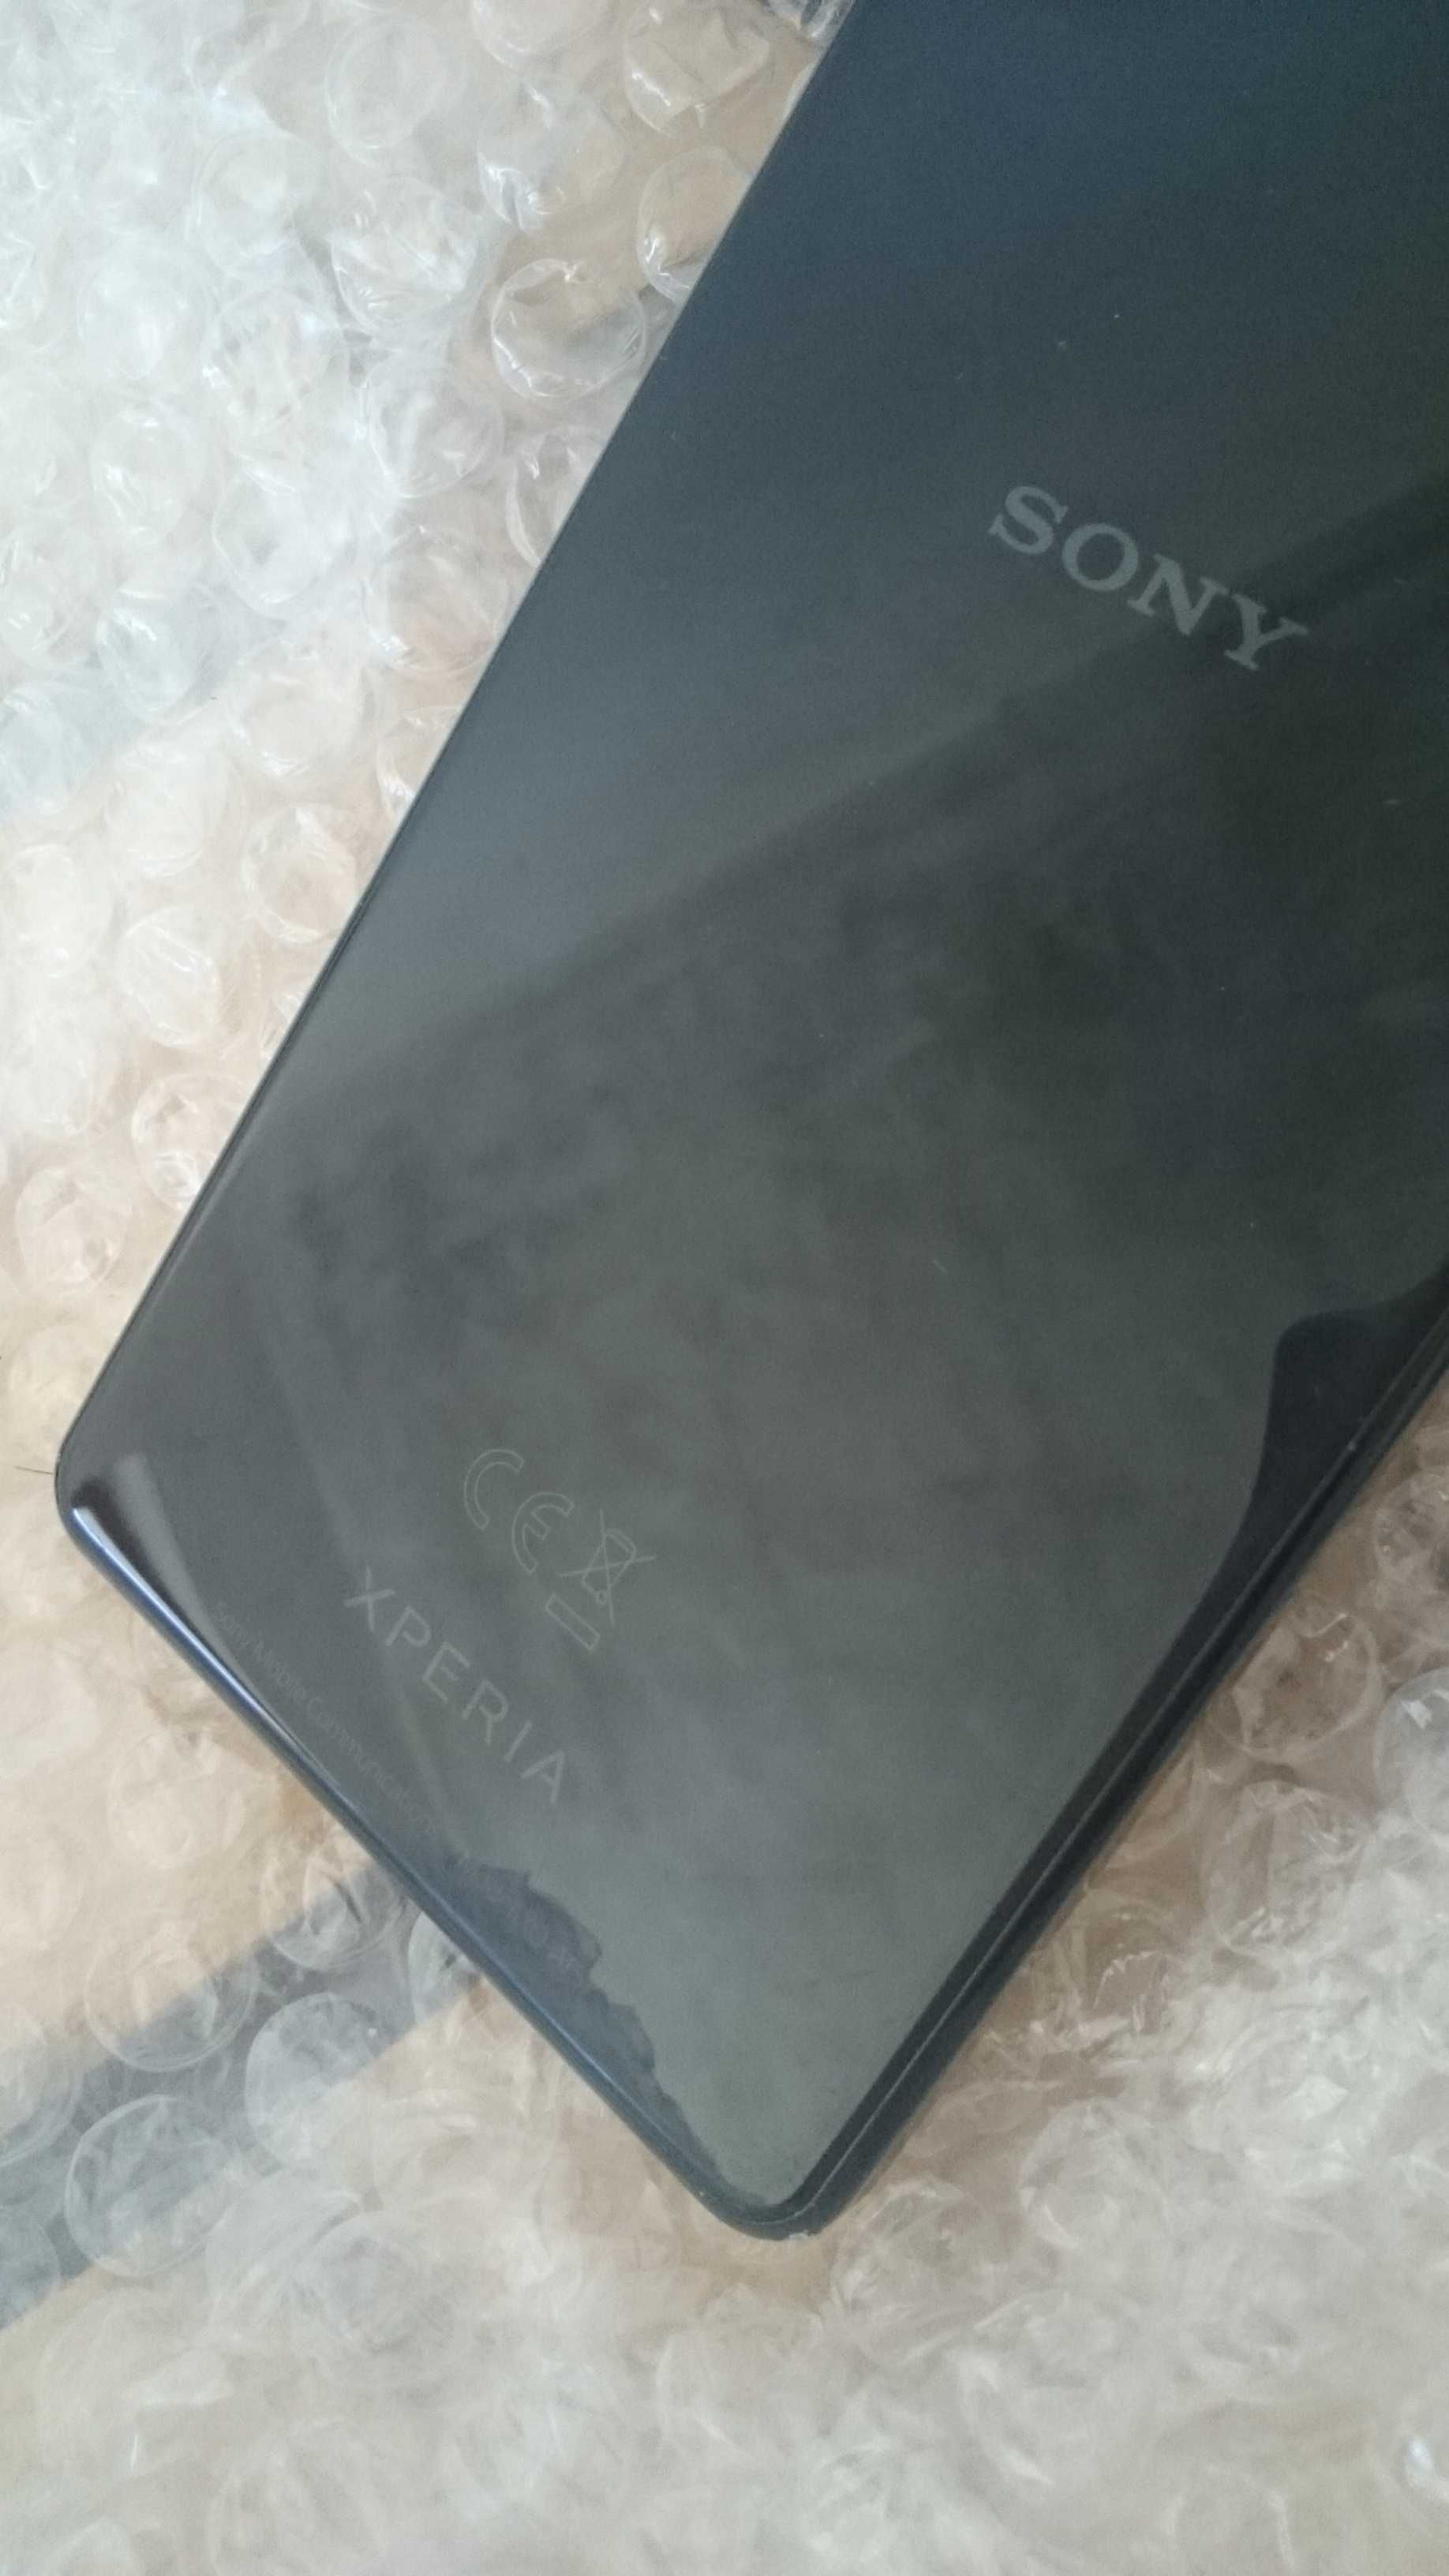 Sony Xperia 1 ii (Mark 2)